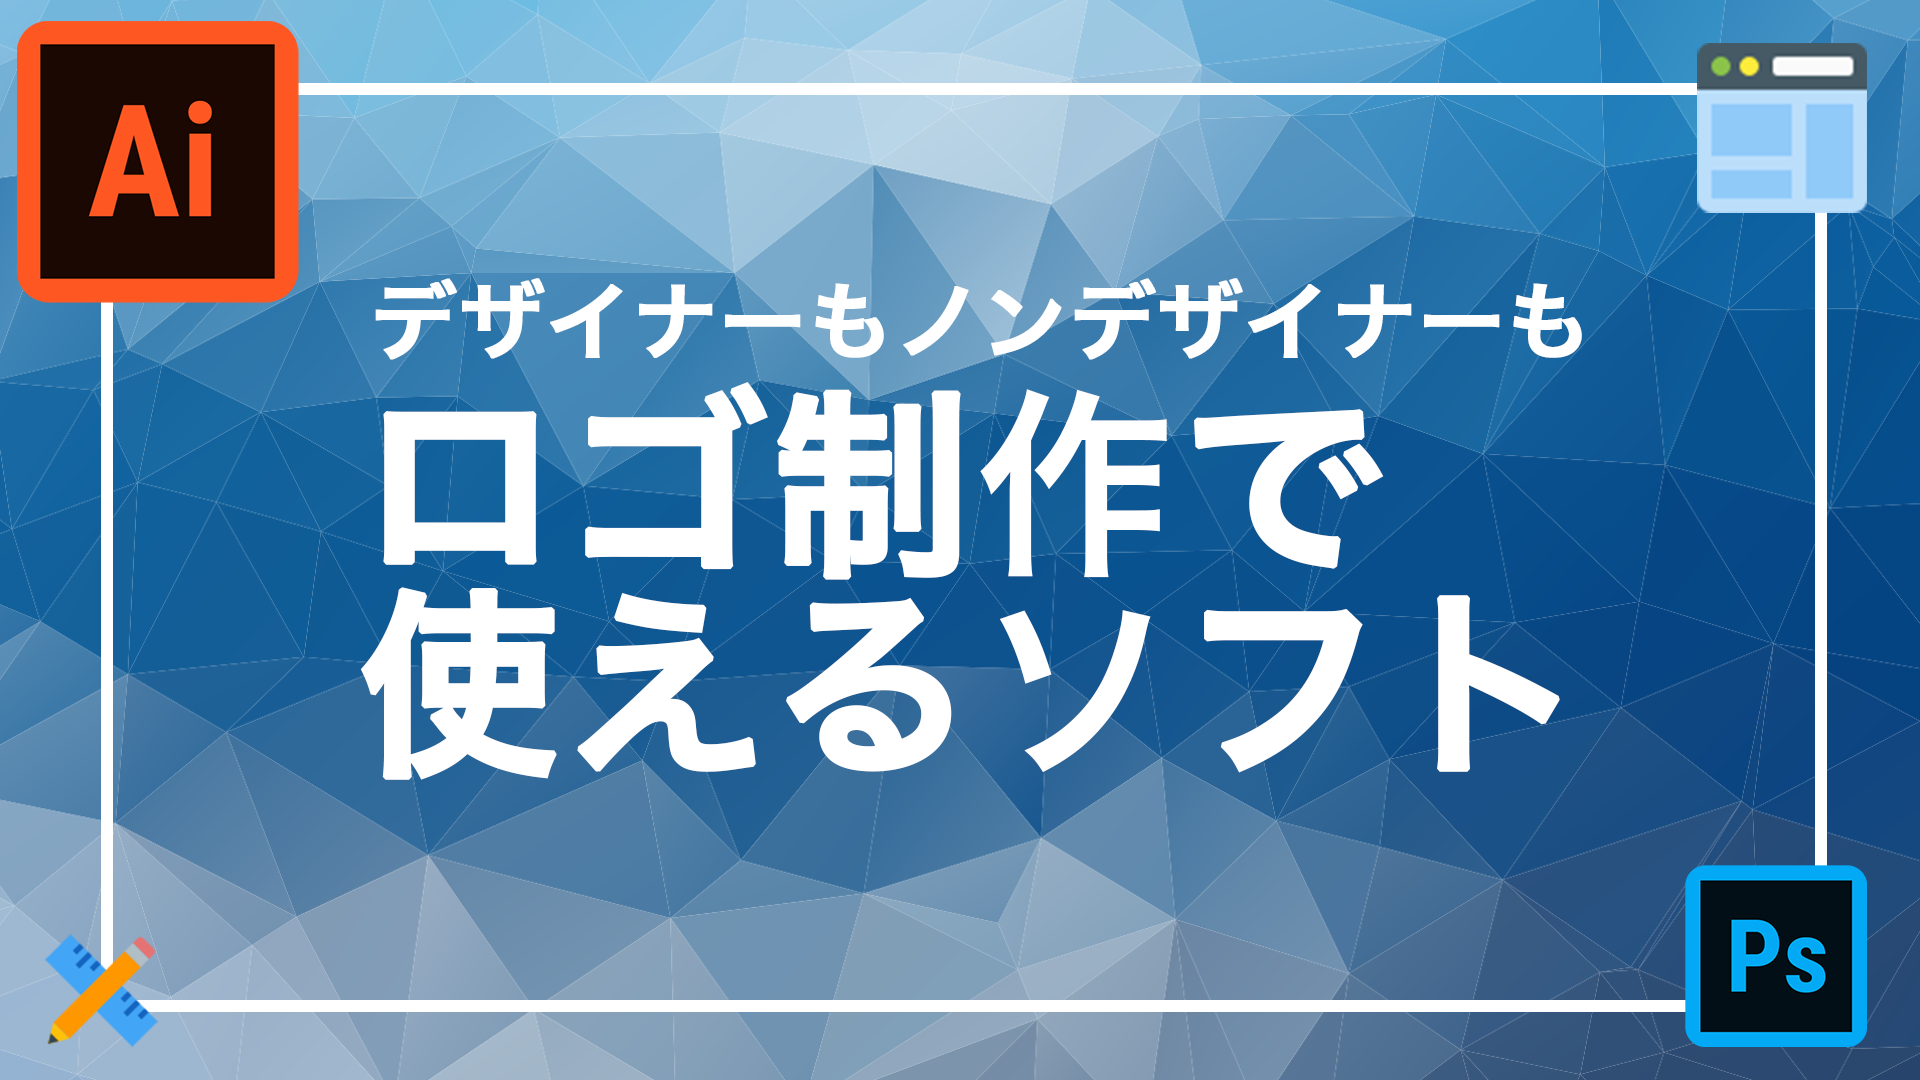 株式会社focus Square 大阪のlp制作会社 デザインで役立つロゴ制作ソフト７選